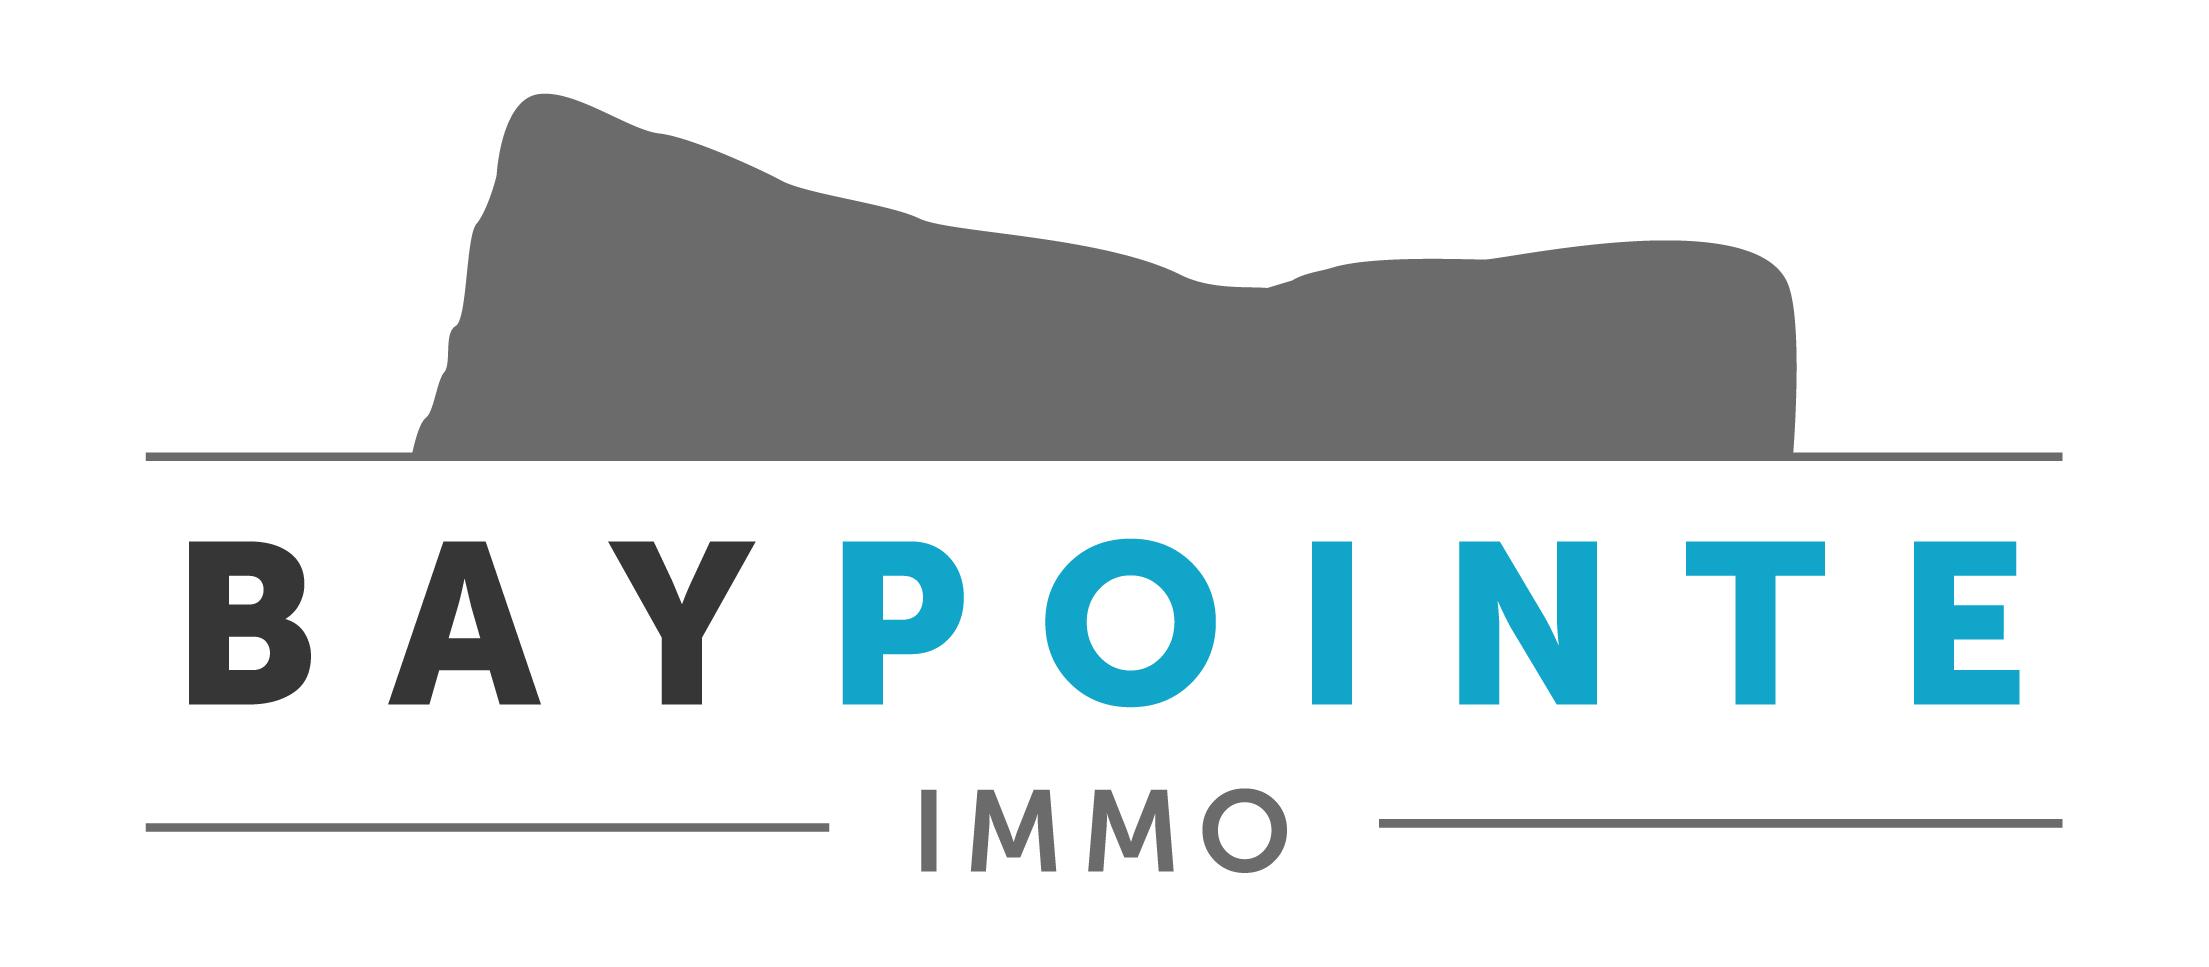 baypointe-logo